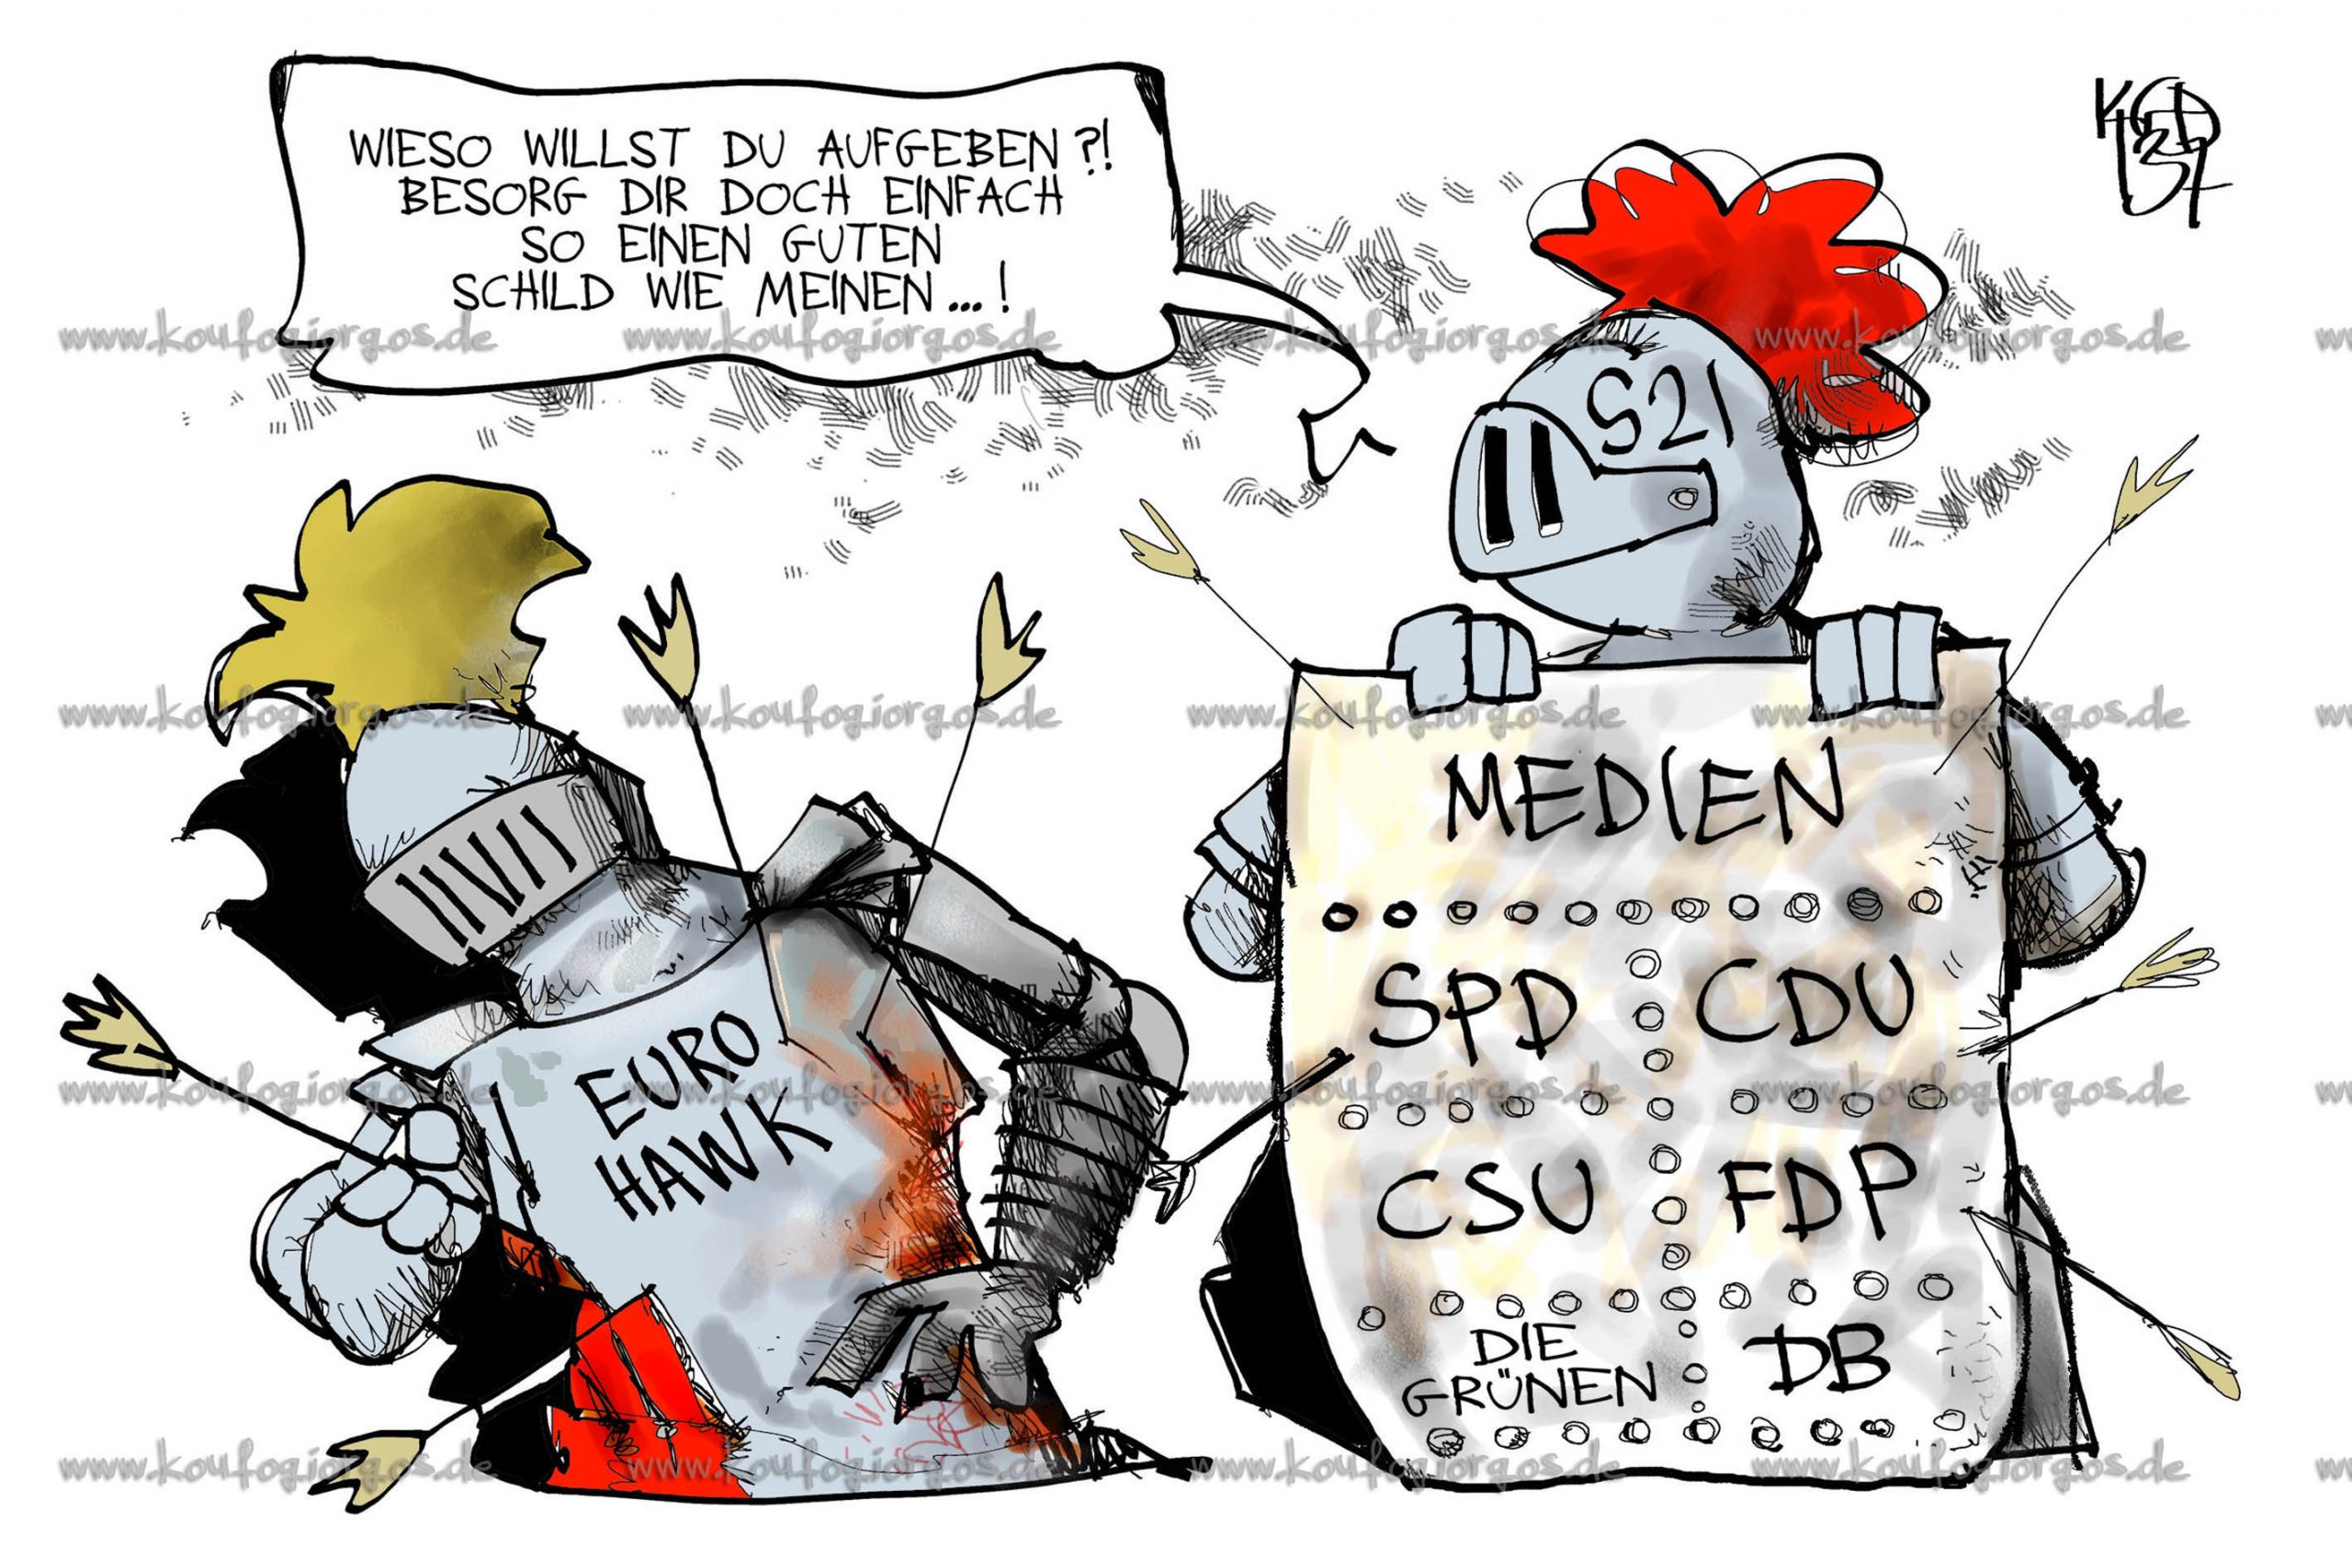 BND und NSA